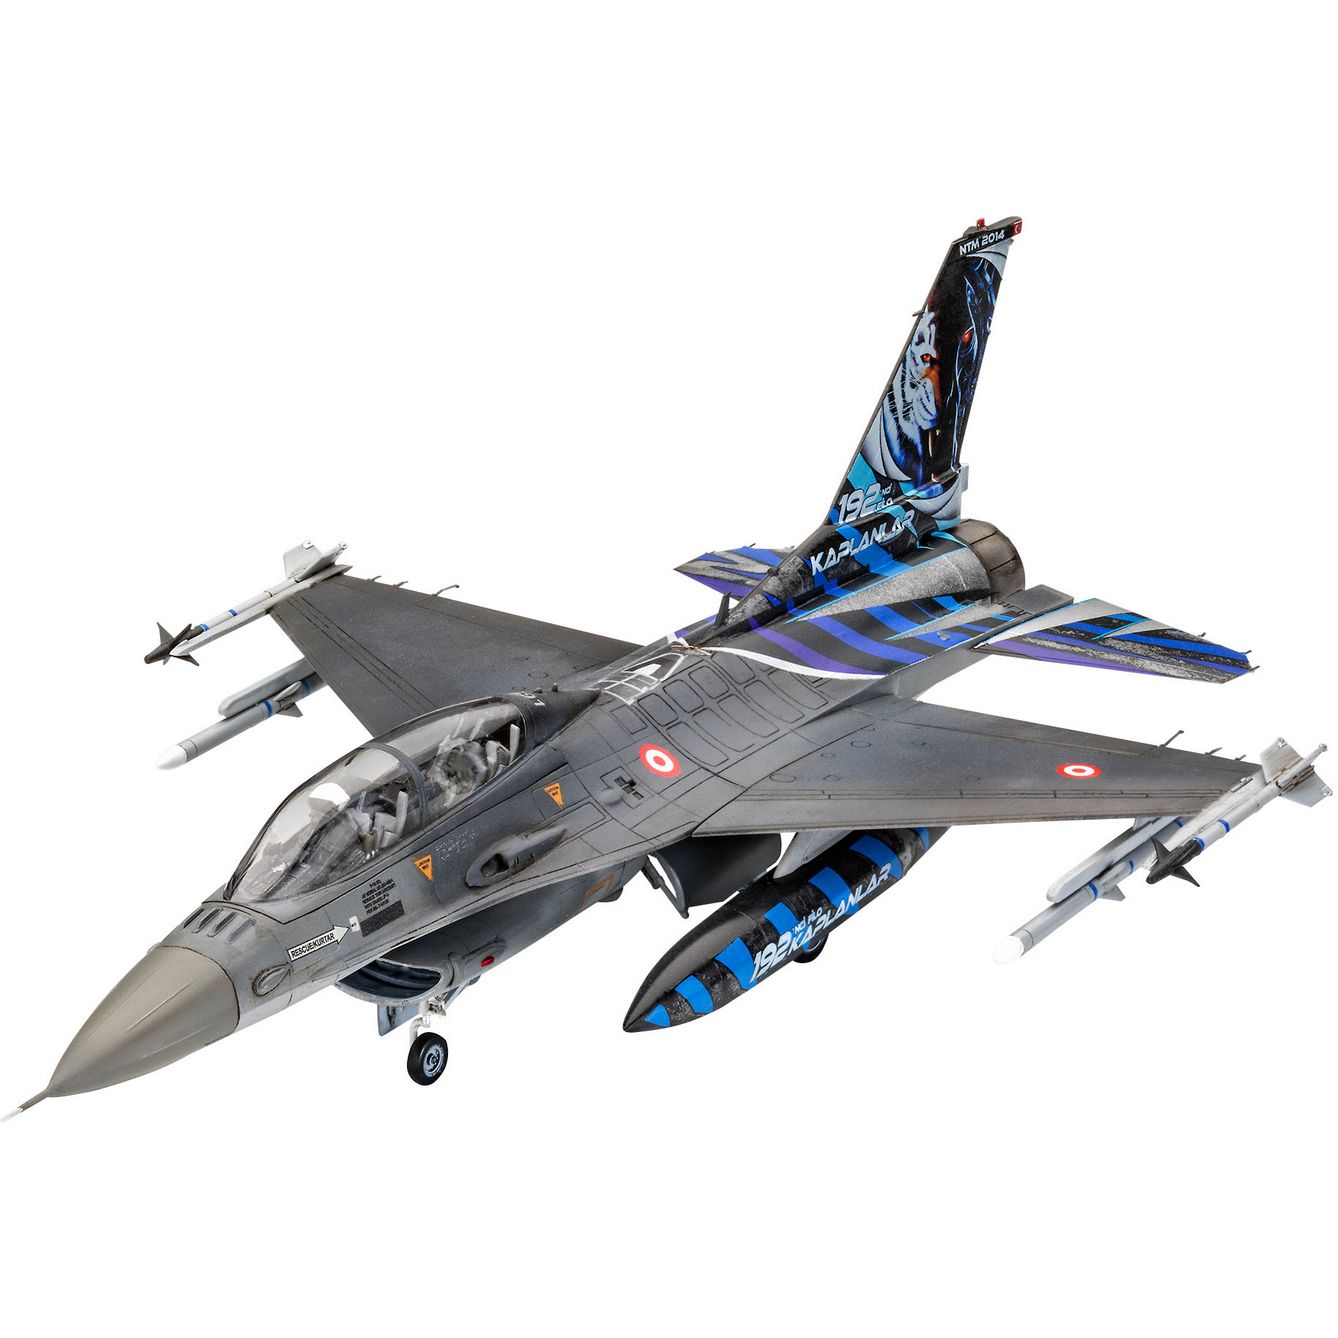 Збірна модель Revell Літак F-16D Tigermeet 2014, рівень 4, масштаб 1:72, 130 деталей (RVL-03844) - фото 3